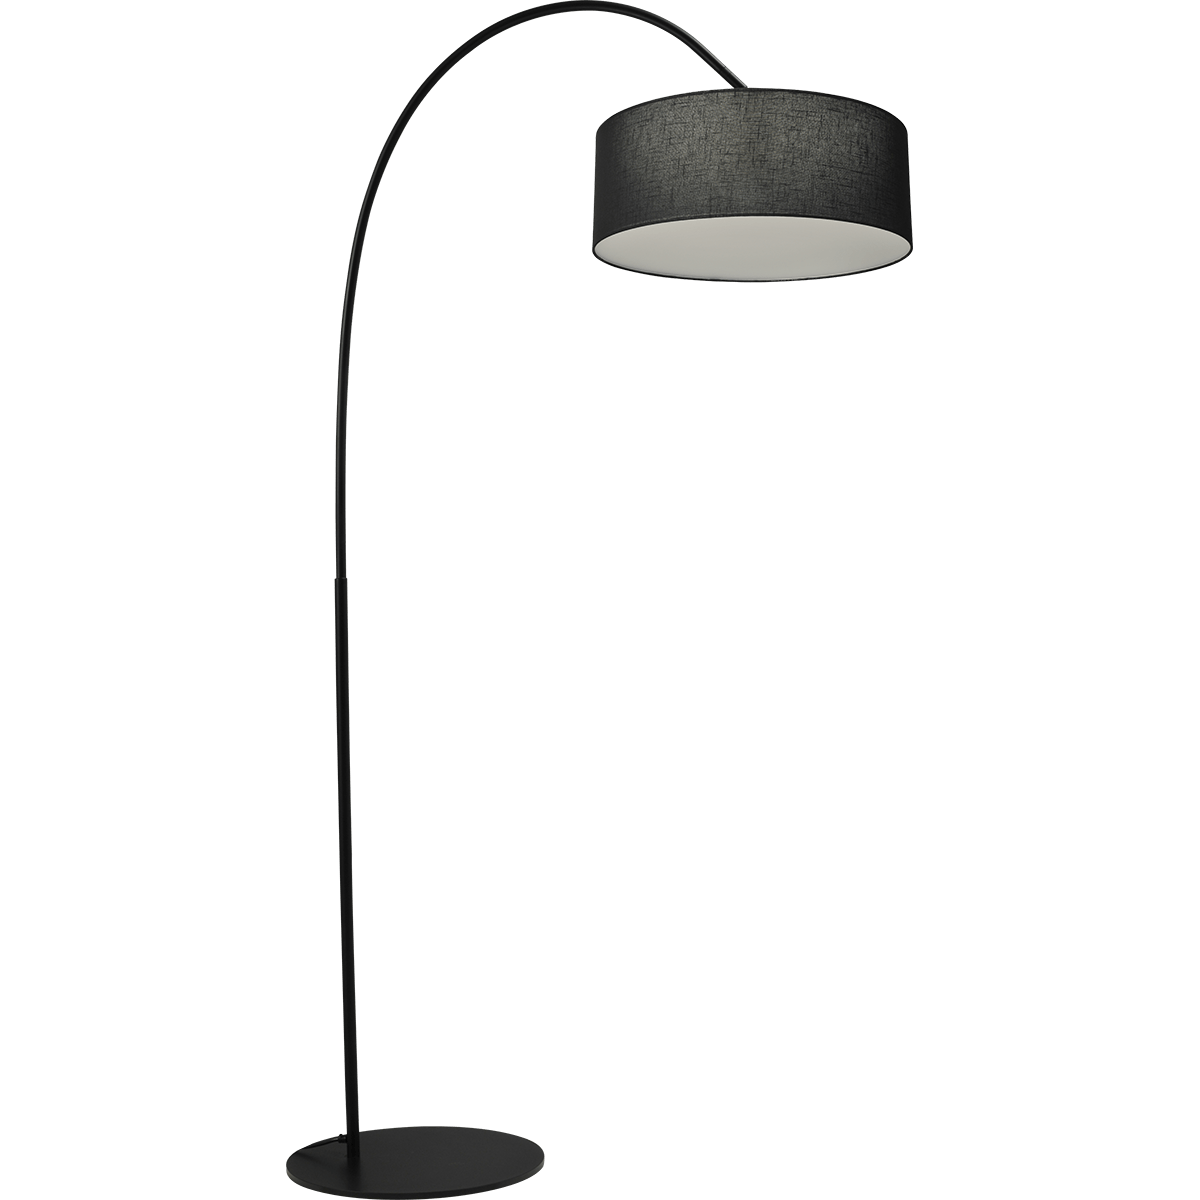 Booglamp, vloerlamp zwart hoogte 183cm breedte 88cm inclusief kap, 1205-05-6560-20-45 - Webo